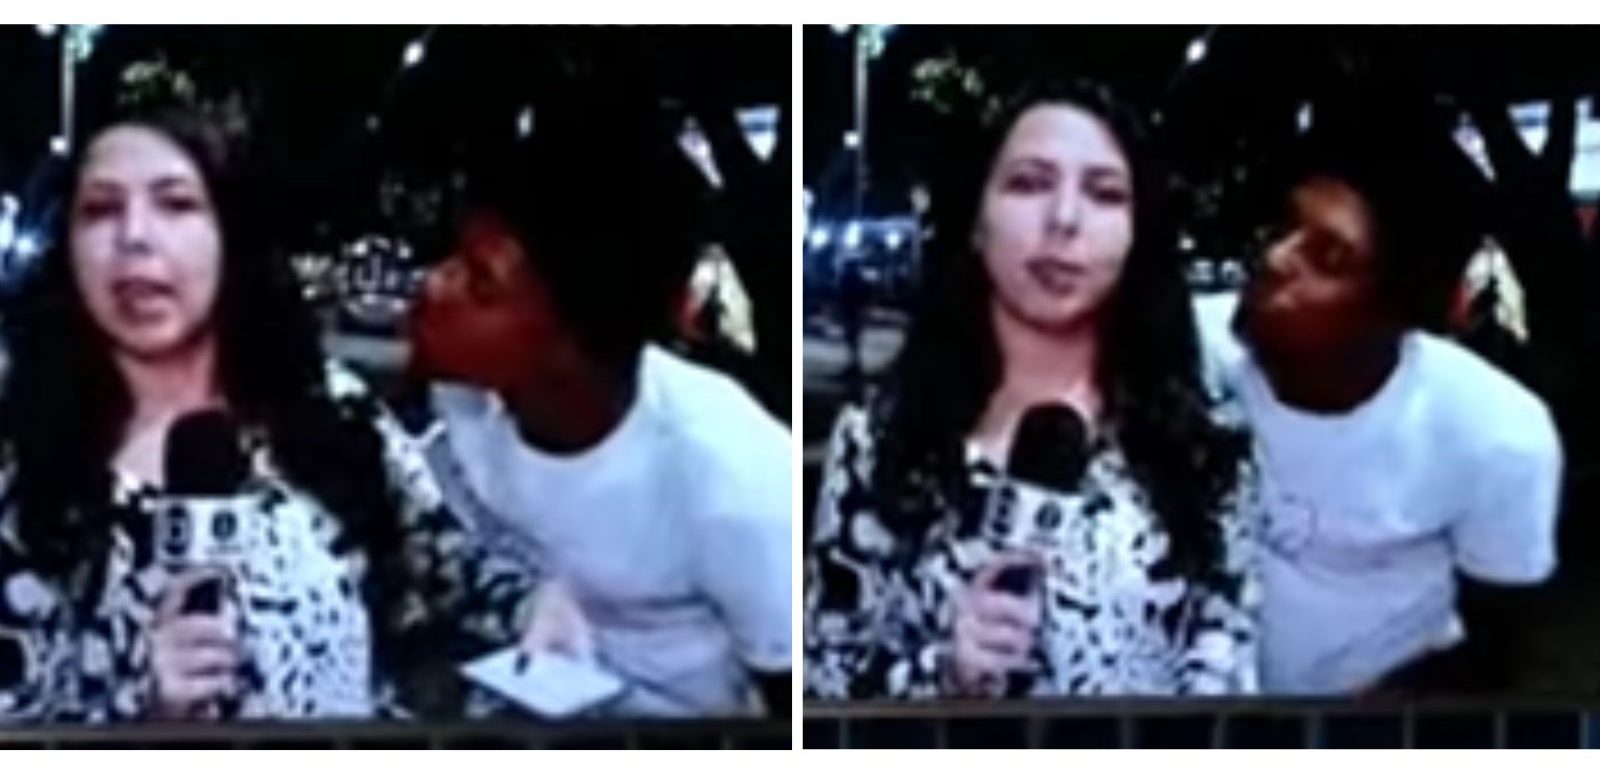 A repórter estava fazendo uma passagem ao vivo quando suspeito tentou beijá-la - Foto: Reprodução/Instagram @biancachaboudet